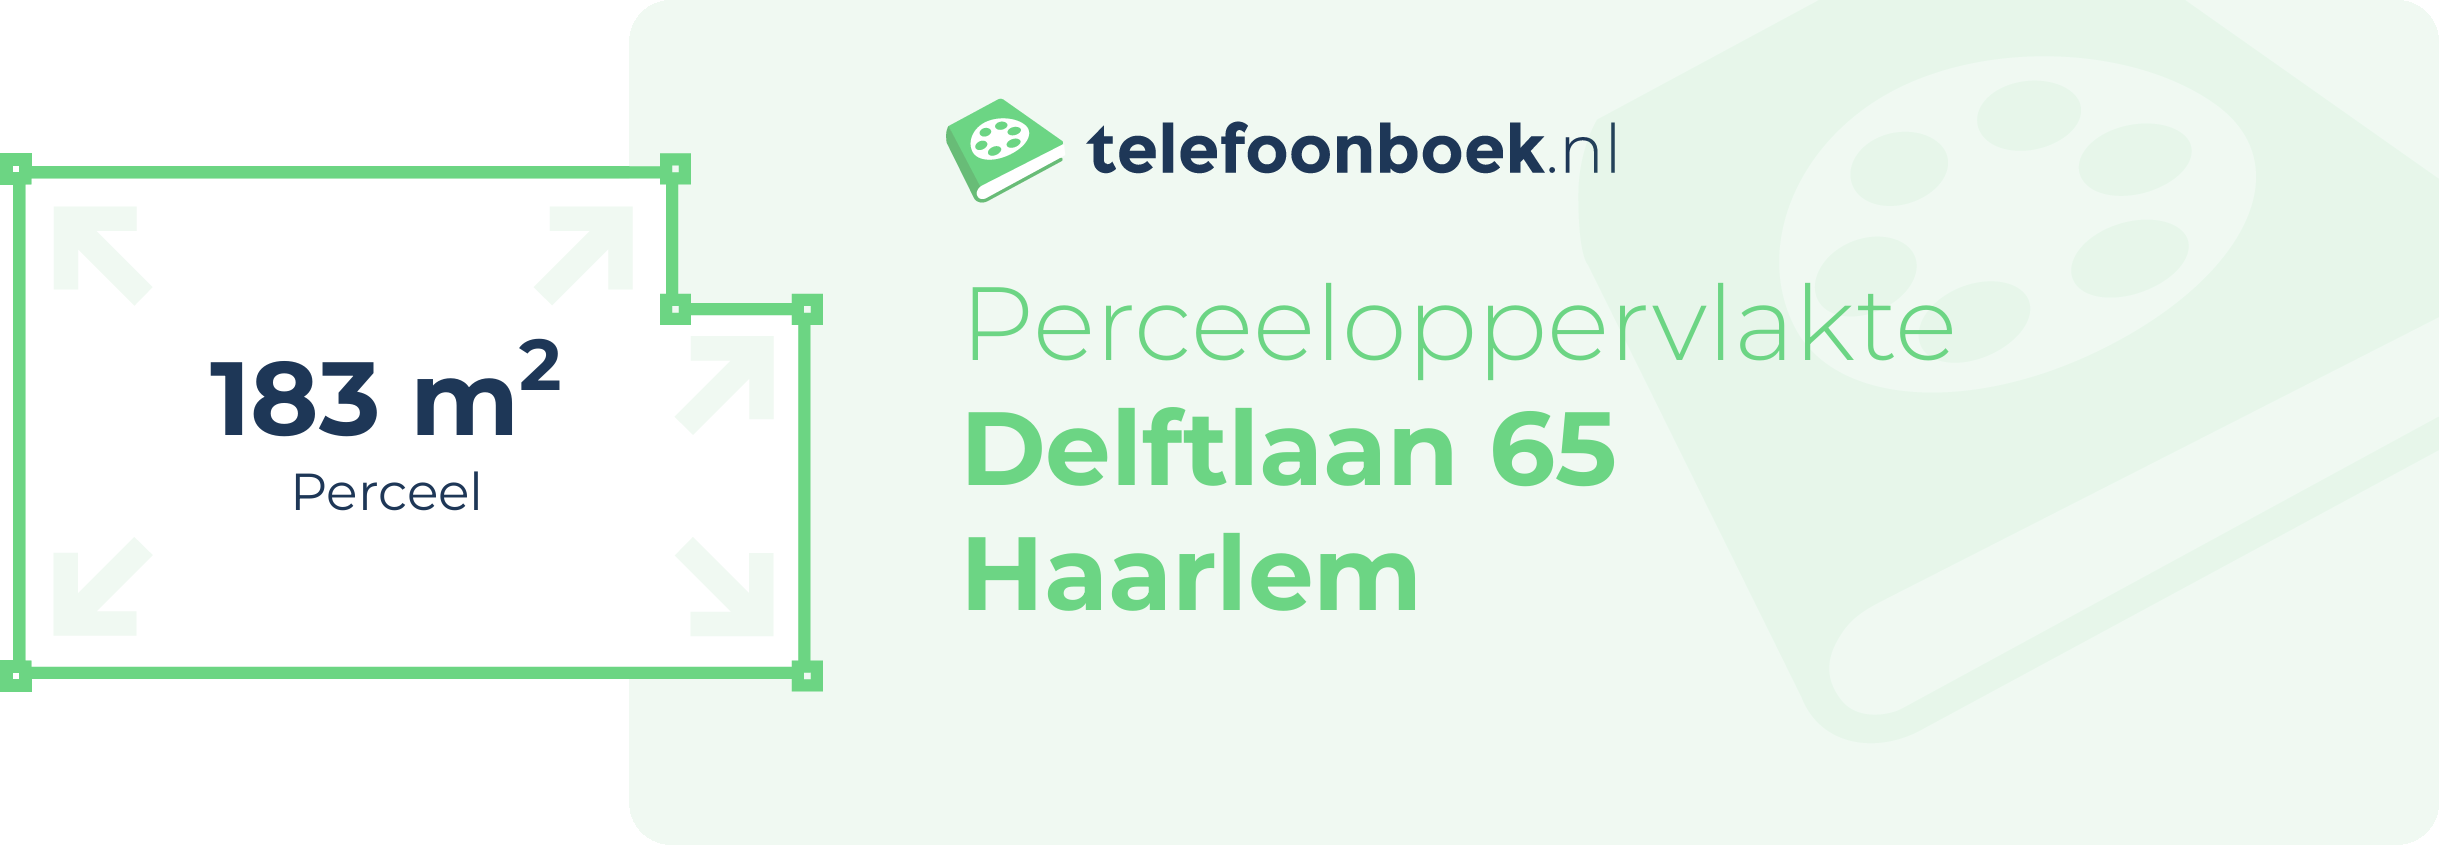 Perceeloppervlakte Delftlaan 65 Haarlem